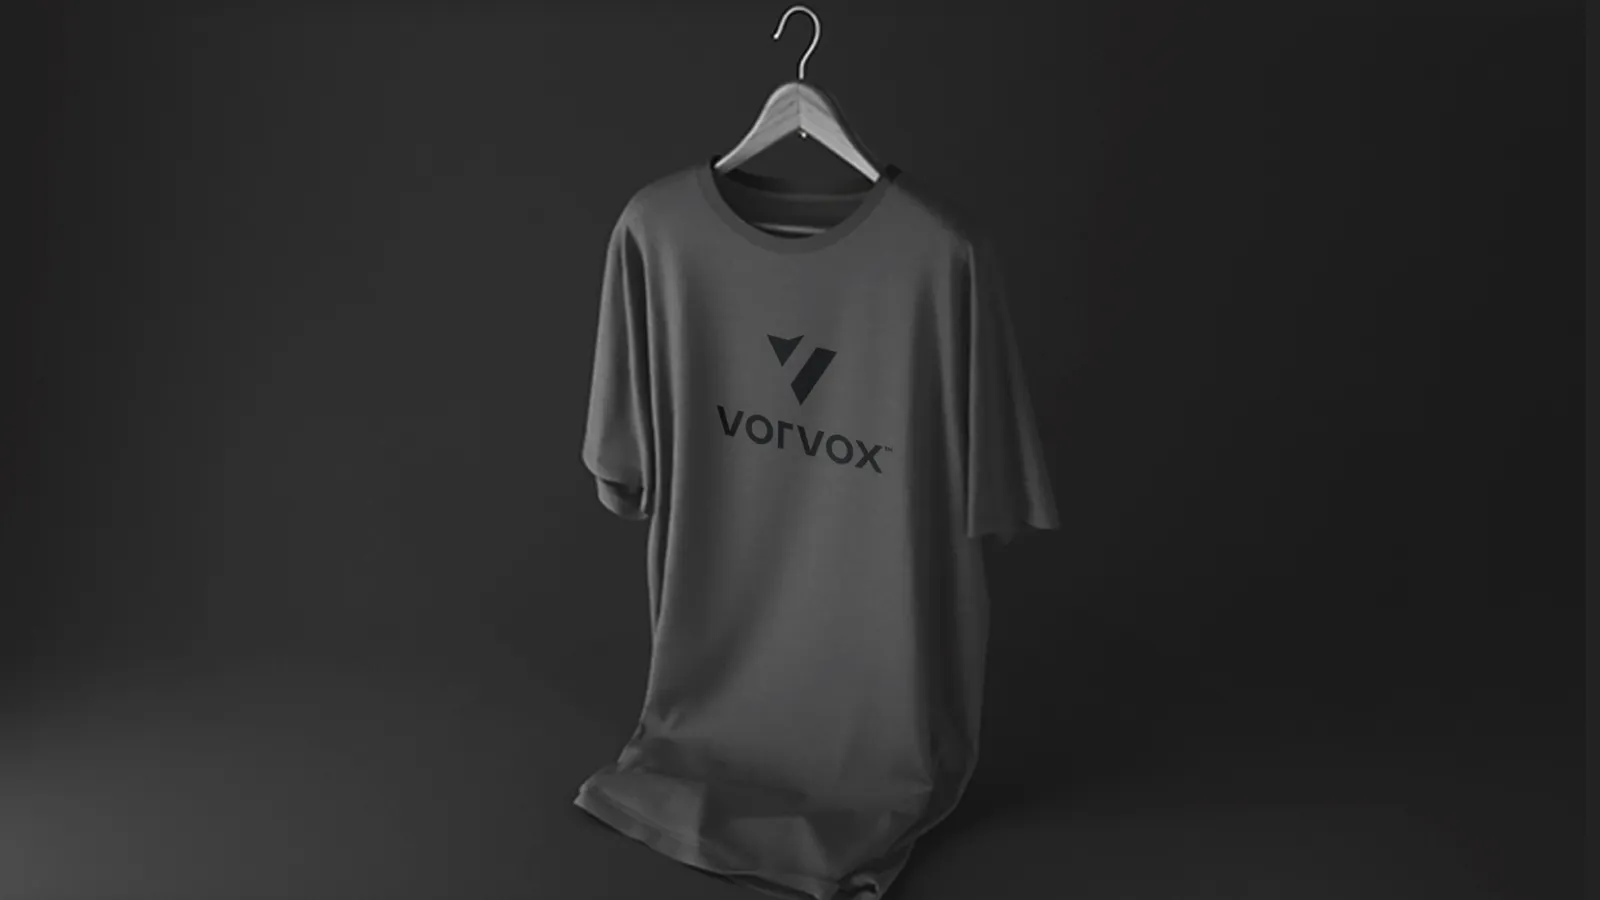 Vorvox